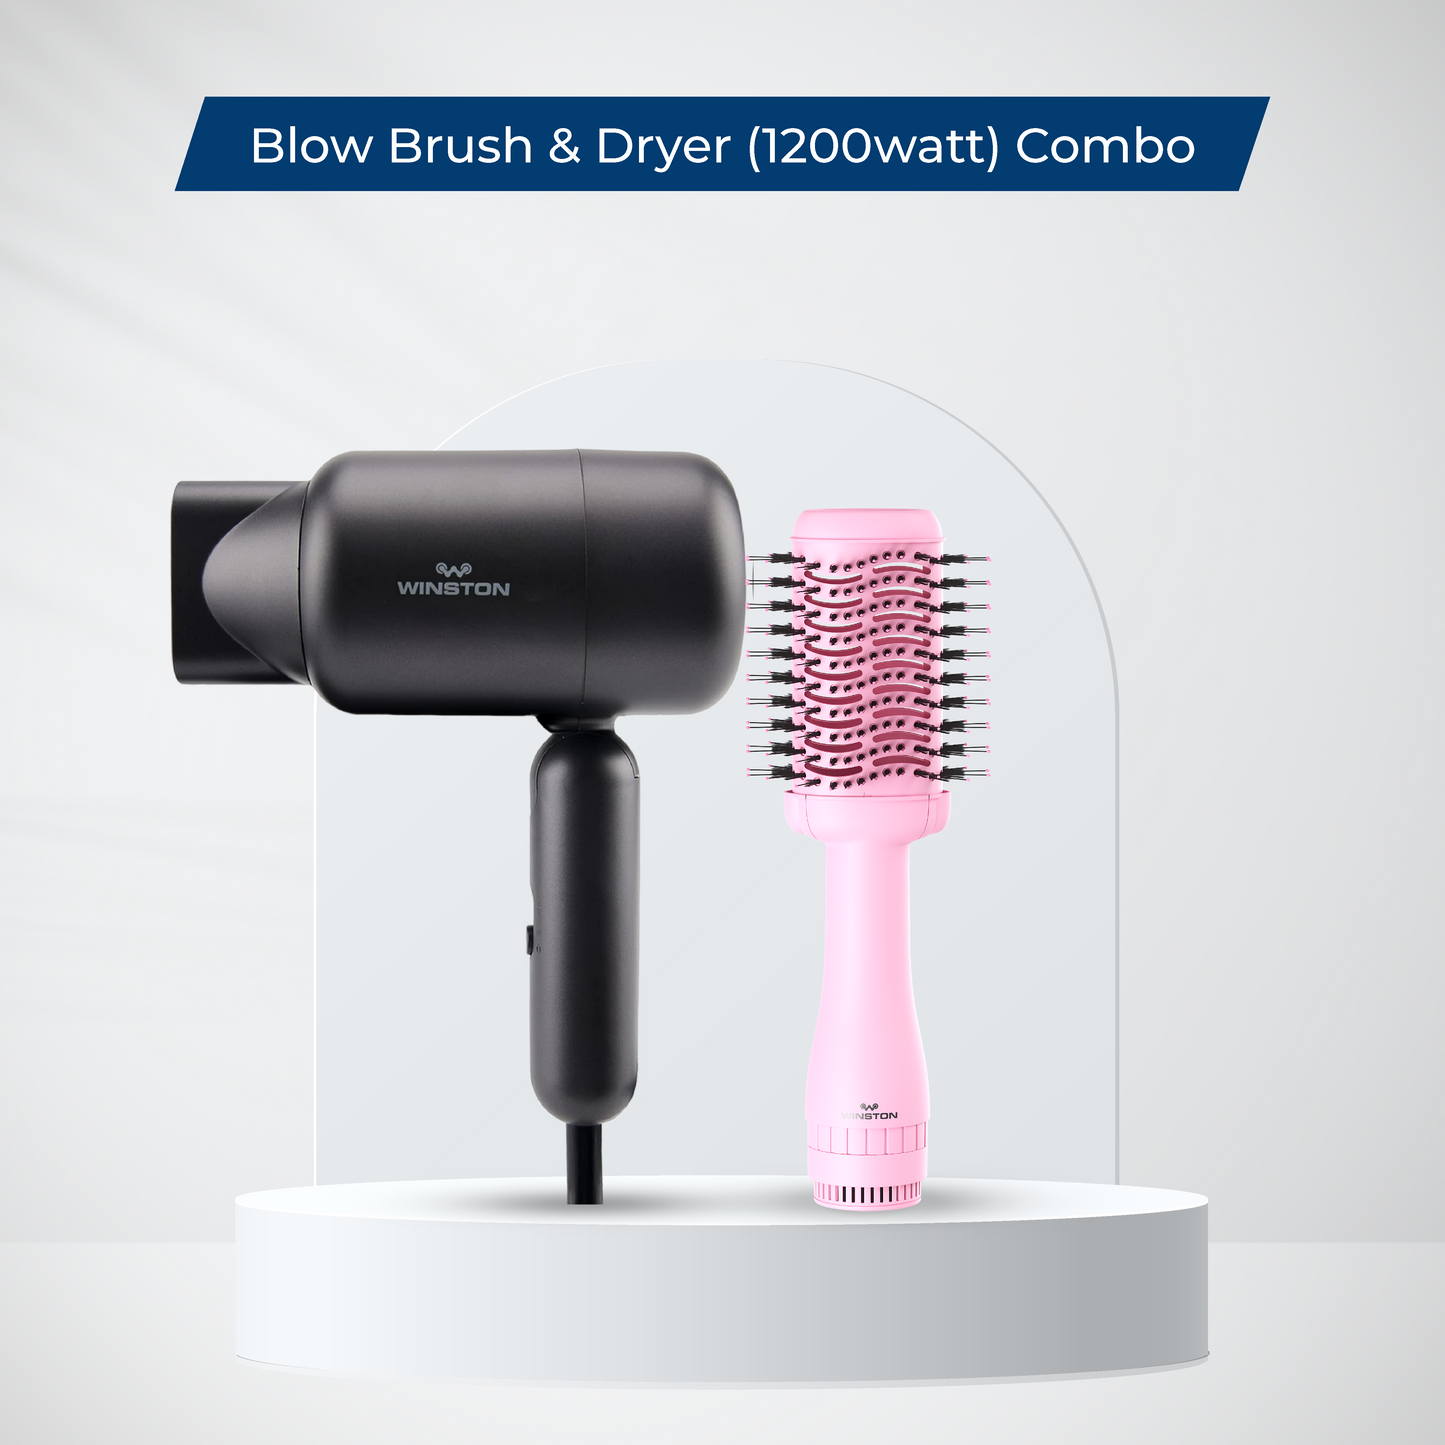 Blow Brush & Dryer (1200watt) Combo